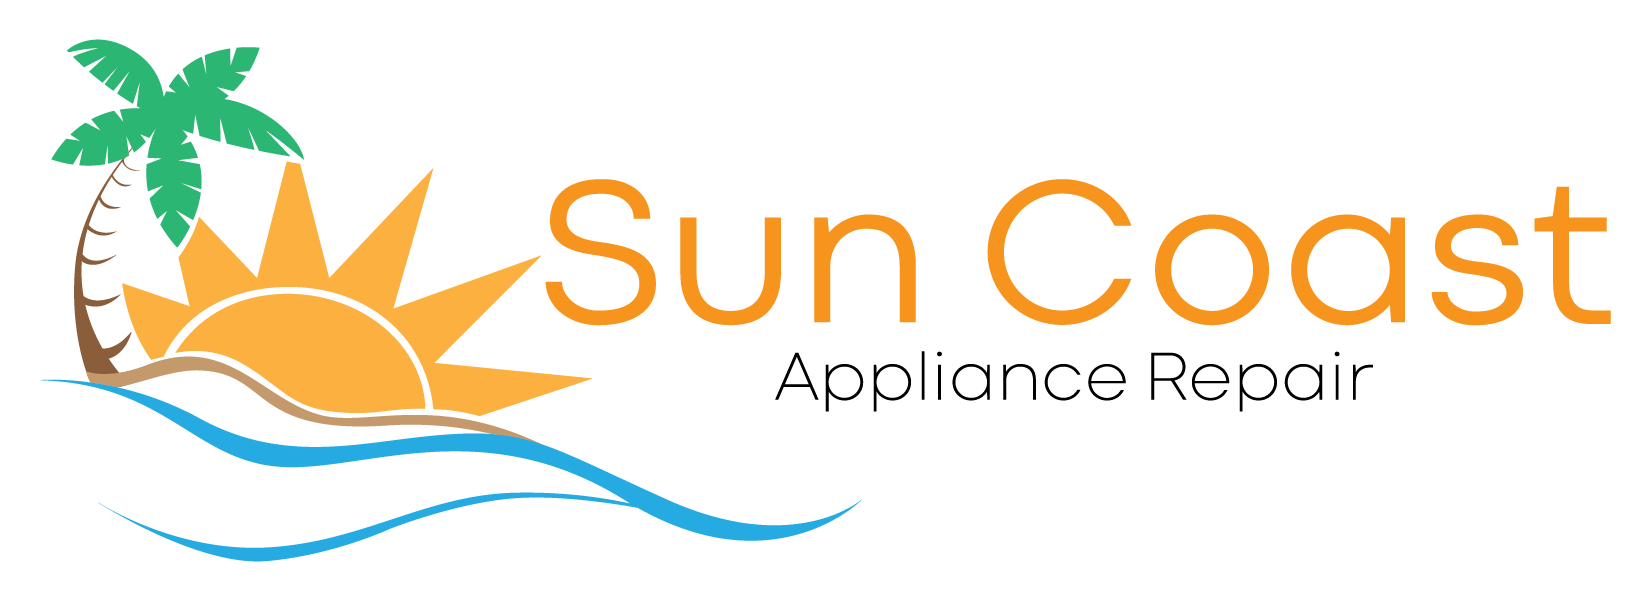 Sun Coast Appliance Repair, LLC Logo